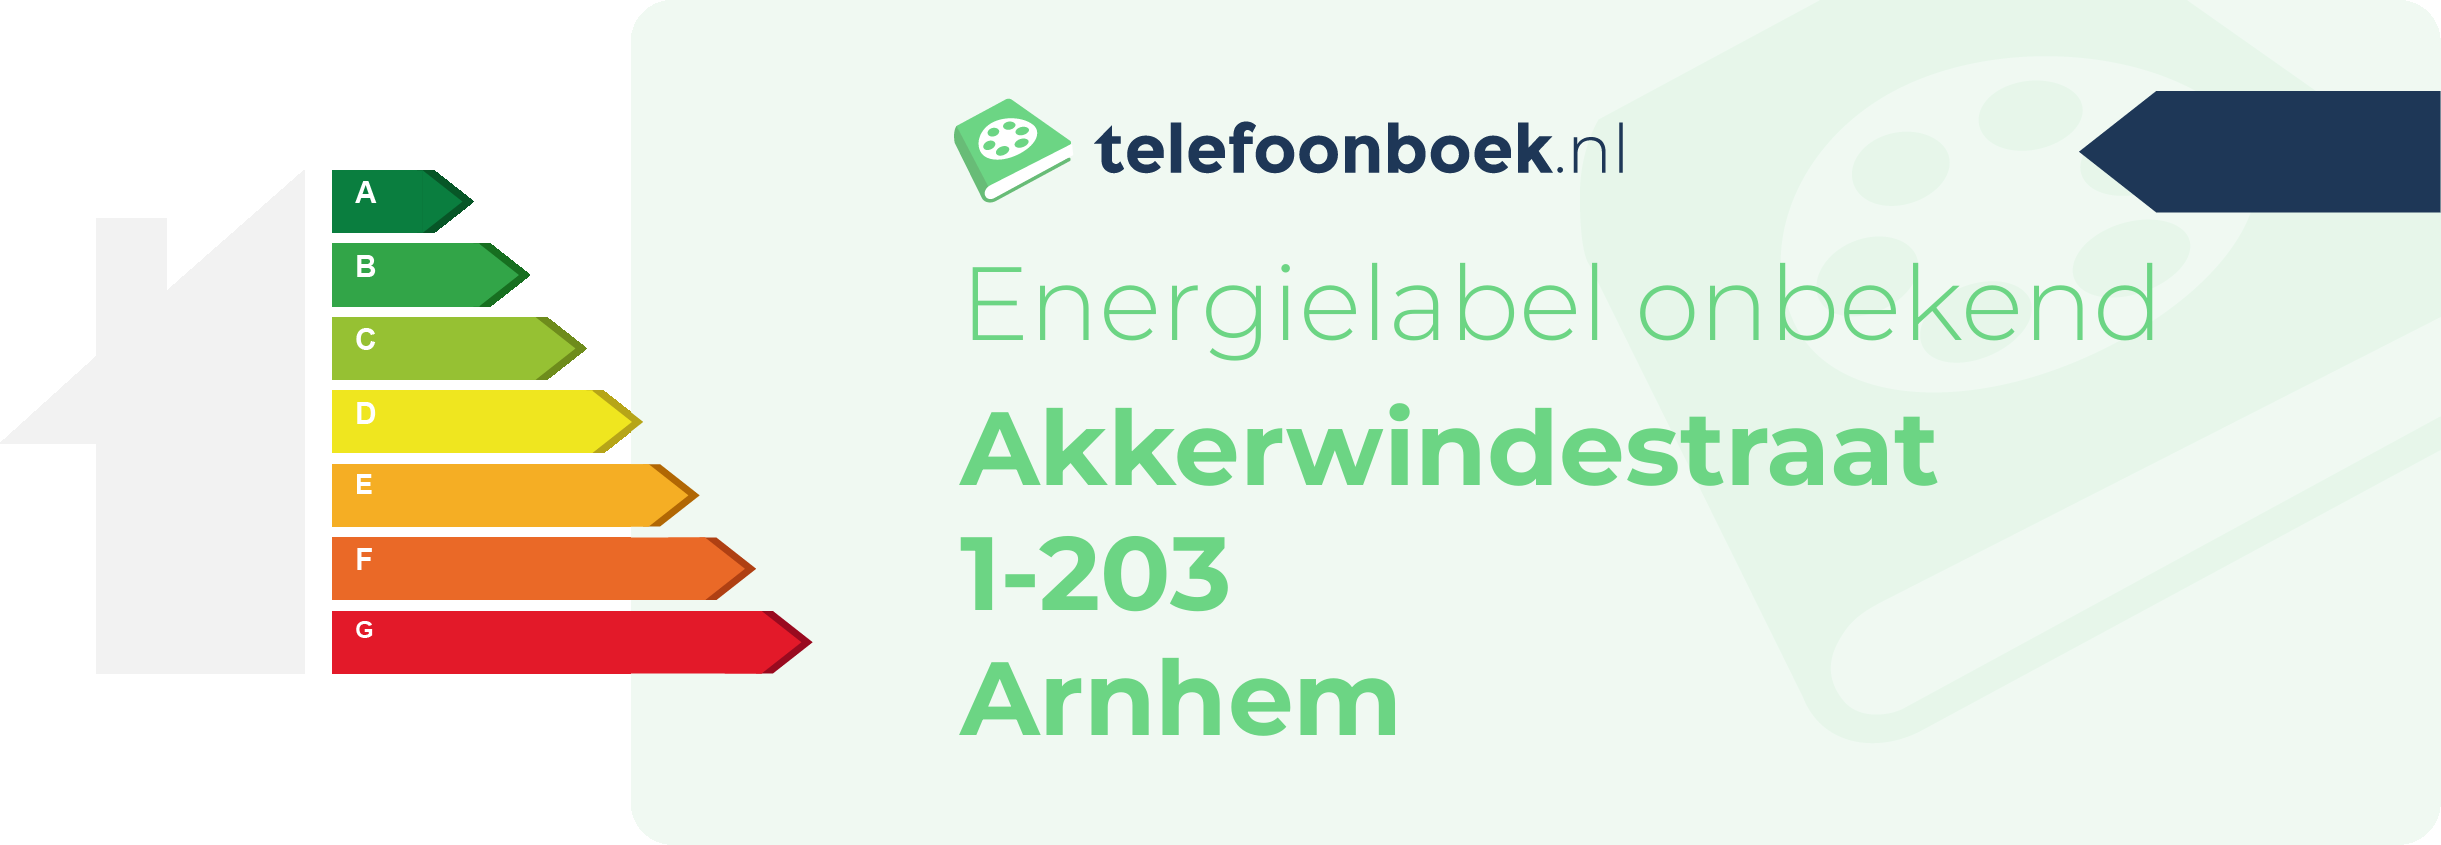 Energielabel Akkerwindestraat 1-203 Arnhem